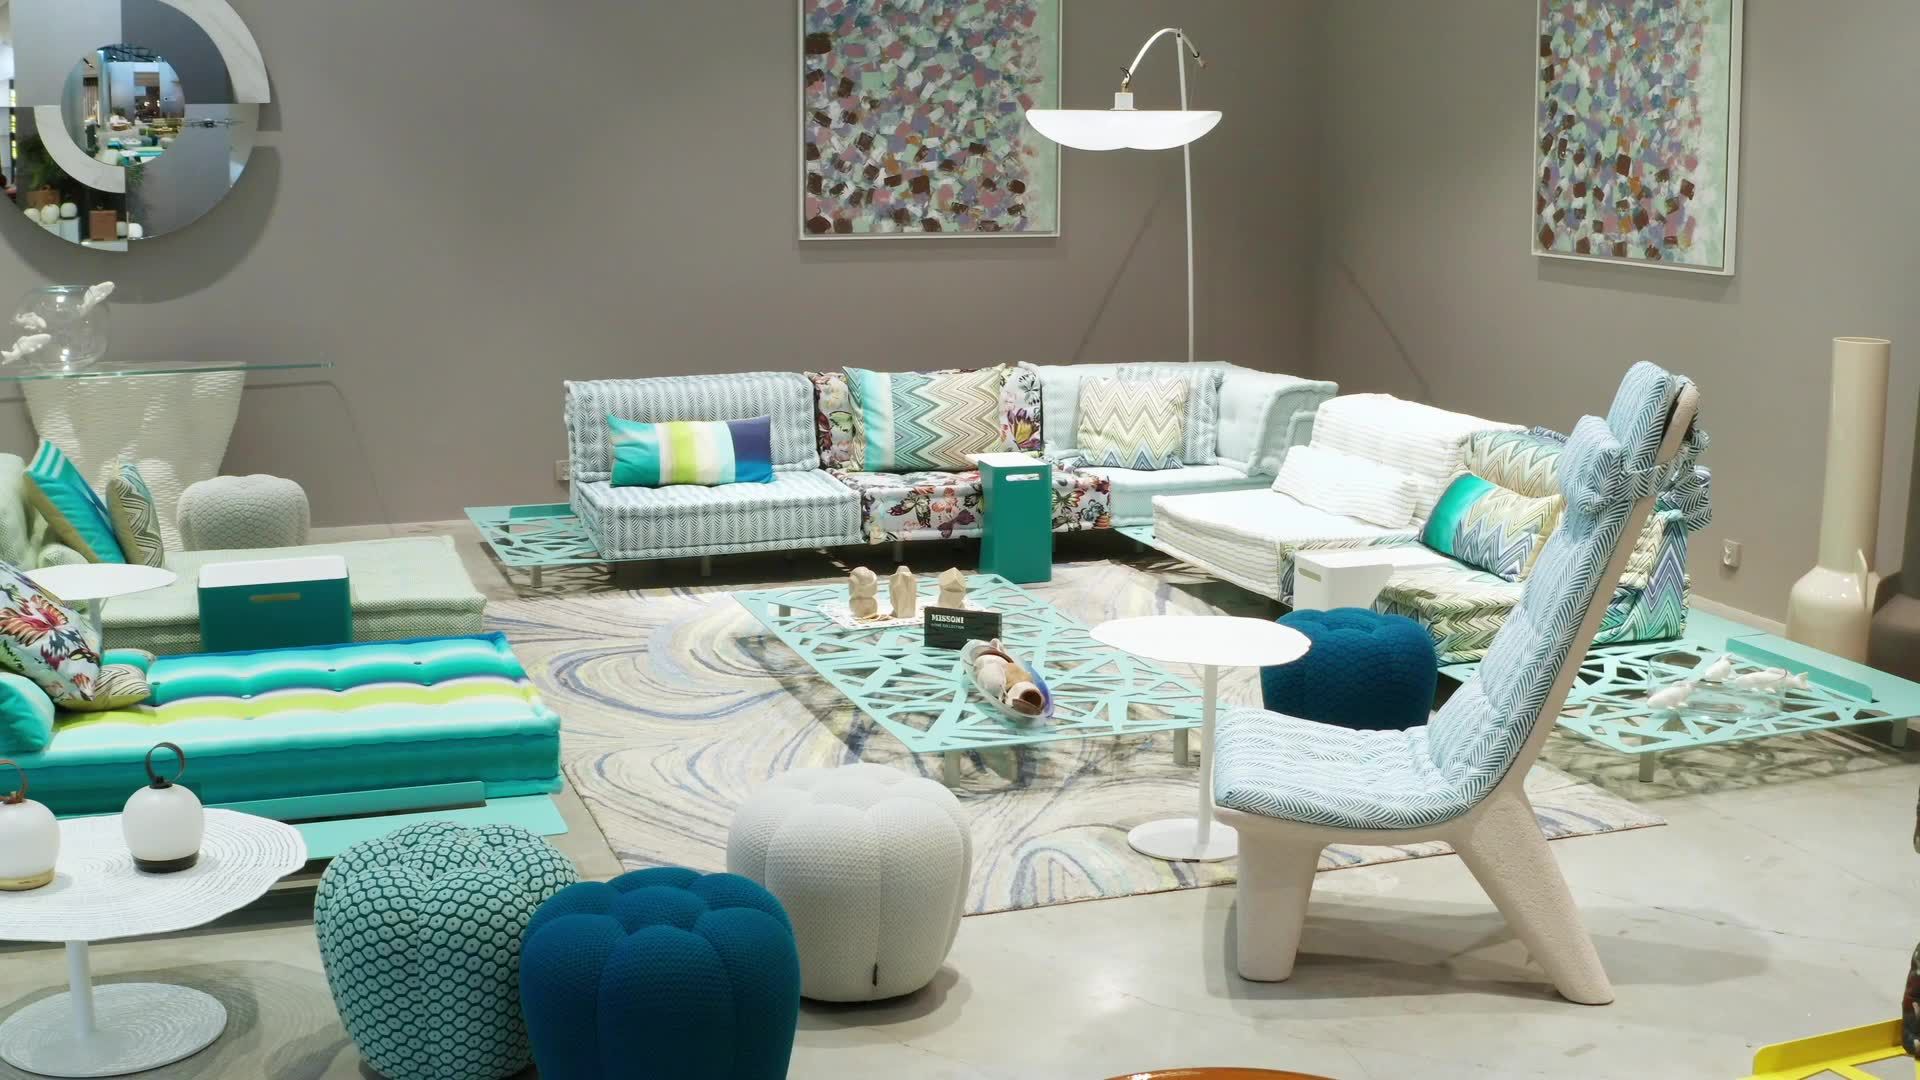 MAH JONG OUTDOOR Modular sofa | Roche Bobois